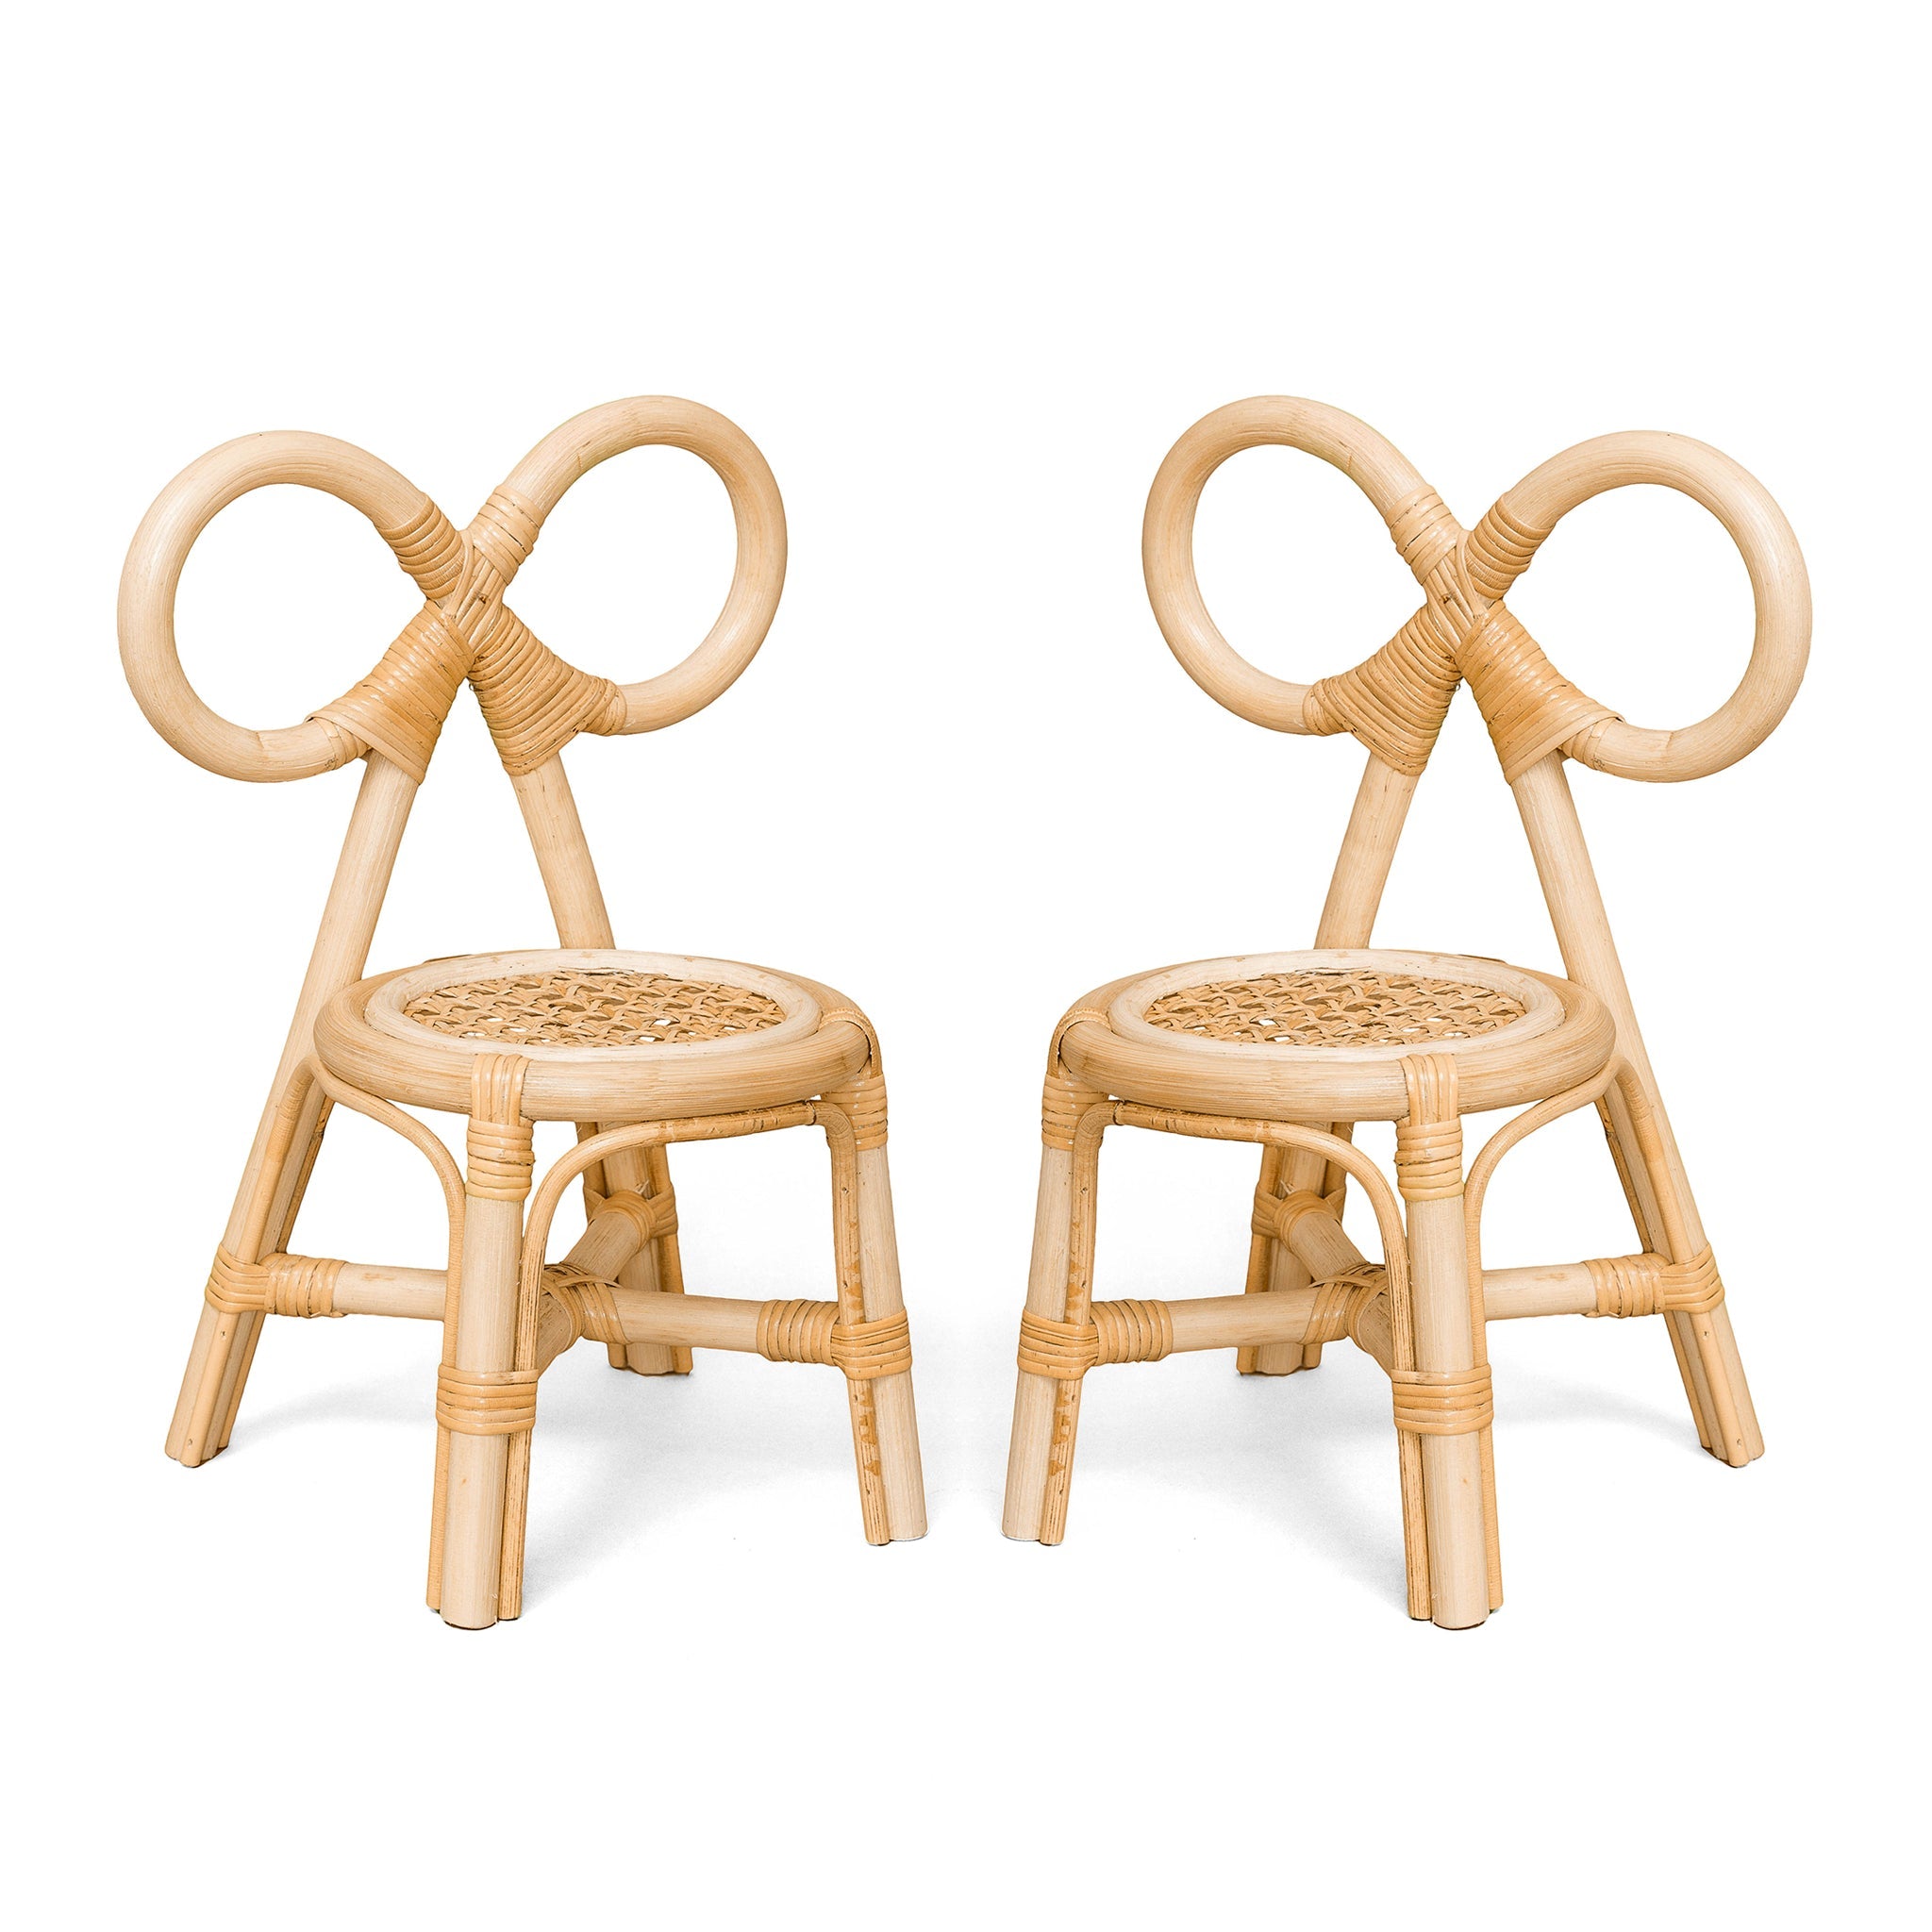 Poppie Toys Poppie Mini Bow Chair Double